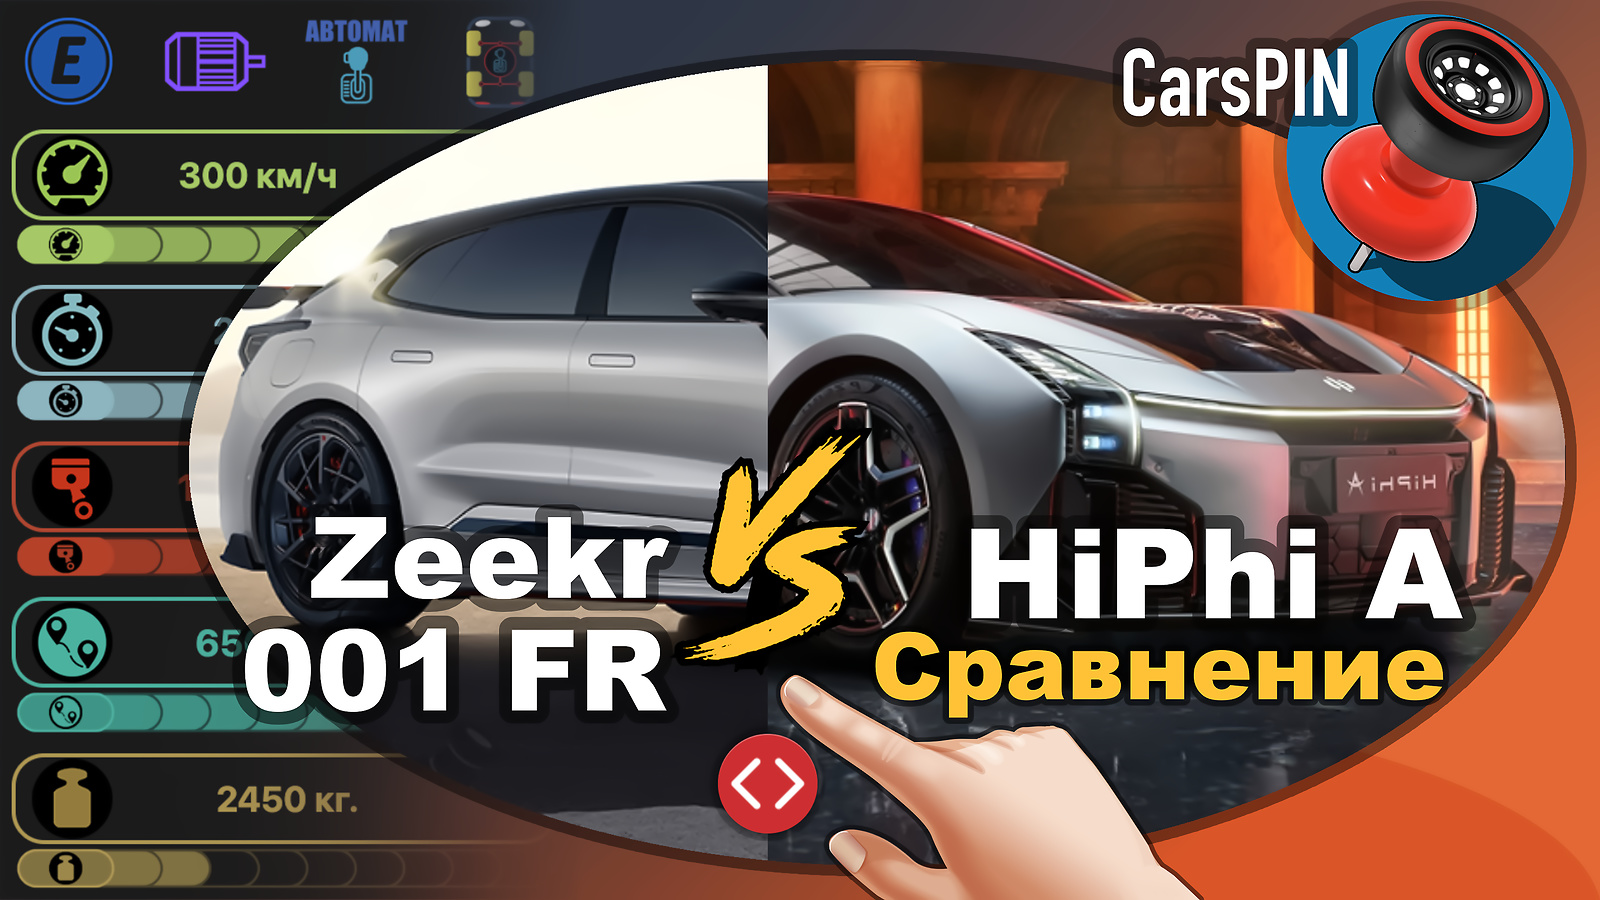 Видеосравнение автомобиля Zeekr 001